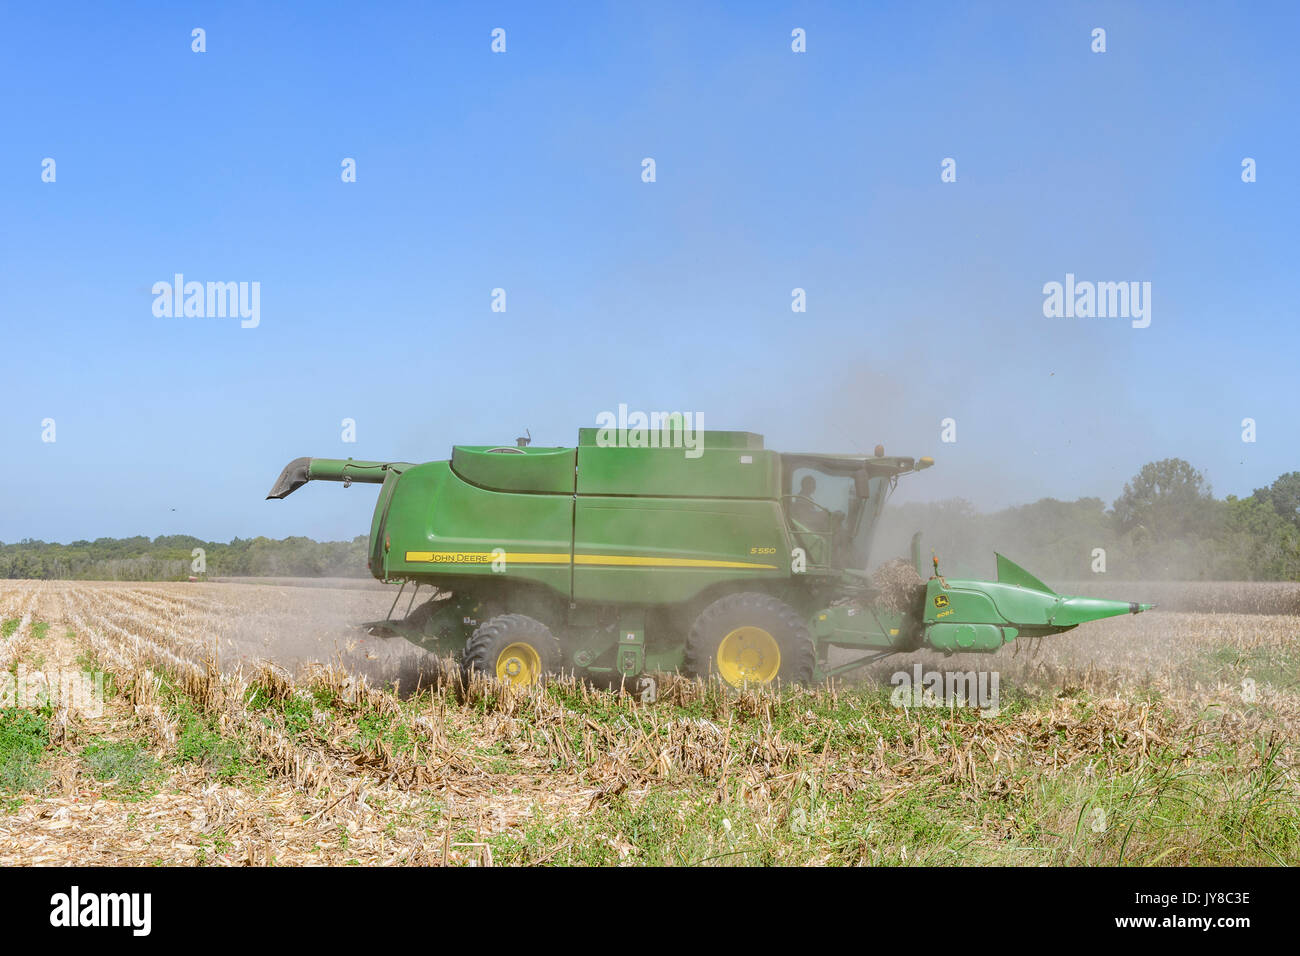 John Deere S550 combine harvester est vieille coupe les tiges de maïs récoltés pour préparer le terrain pour la récolte de l'année prochaine sur une ferme du centre de l'Alabama, USA. Banque D'Images